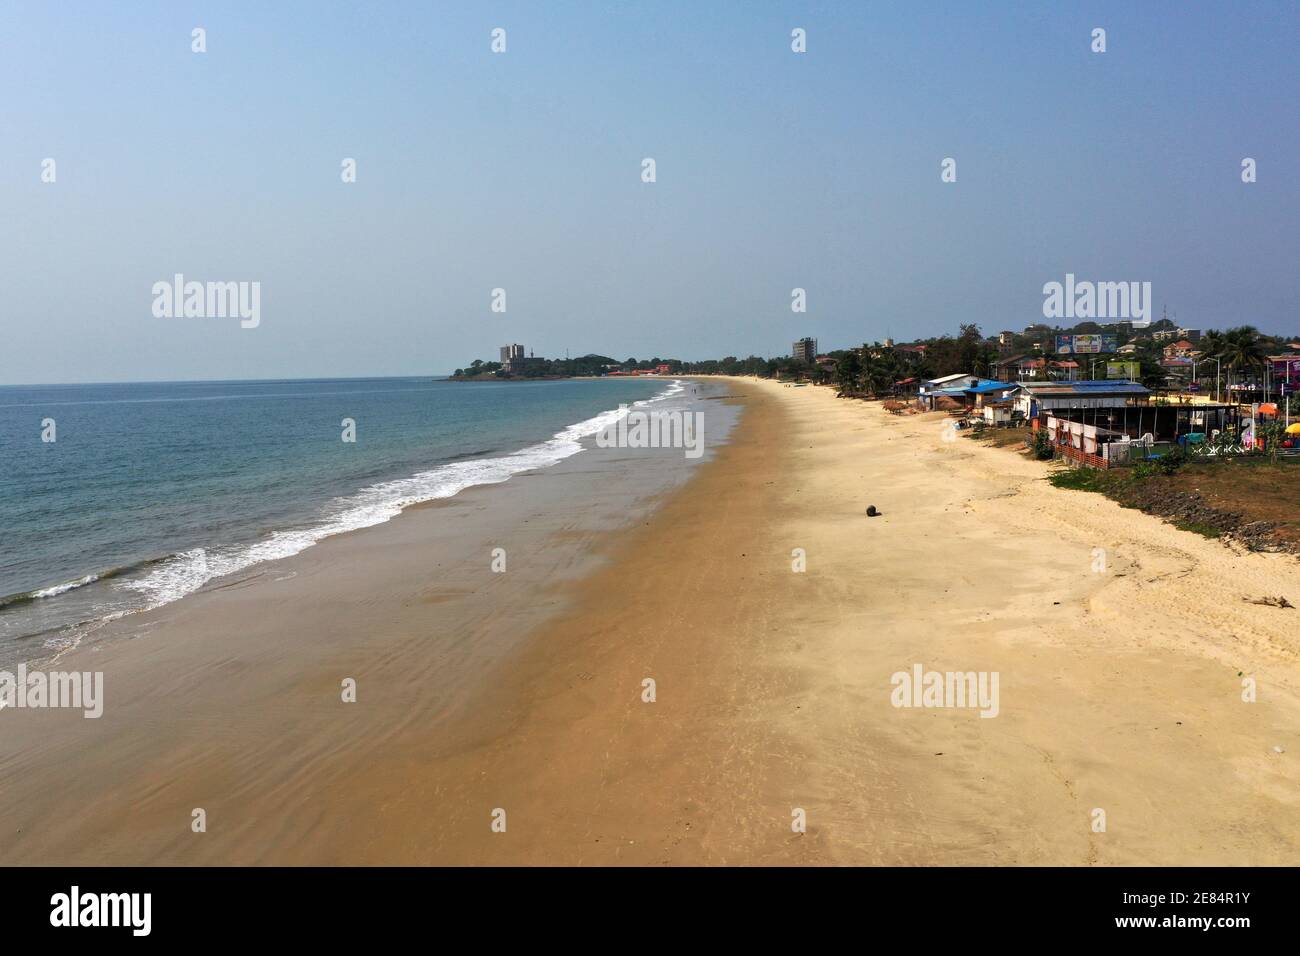 Freetown Sierra Leone pollution des plages de sable en Afrique. Afrique de l'Ouest extrême pauvreté et faim. Pollution sur les plages de l'océan. Climat tropical. Banque D'Images